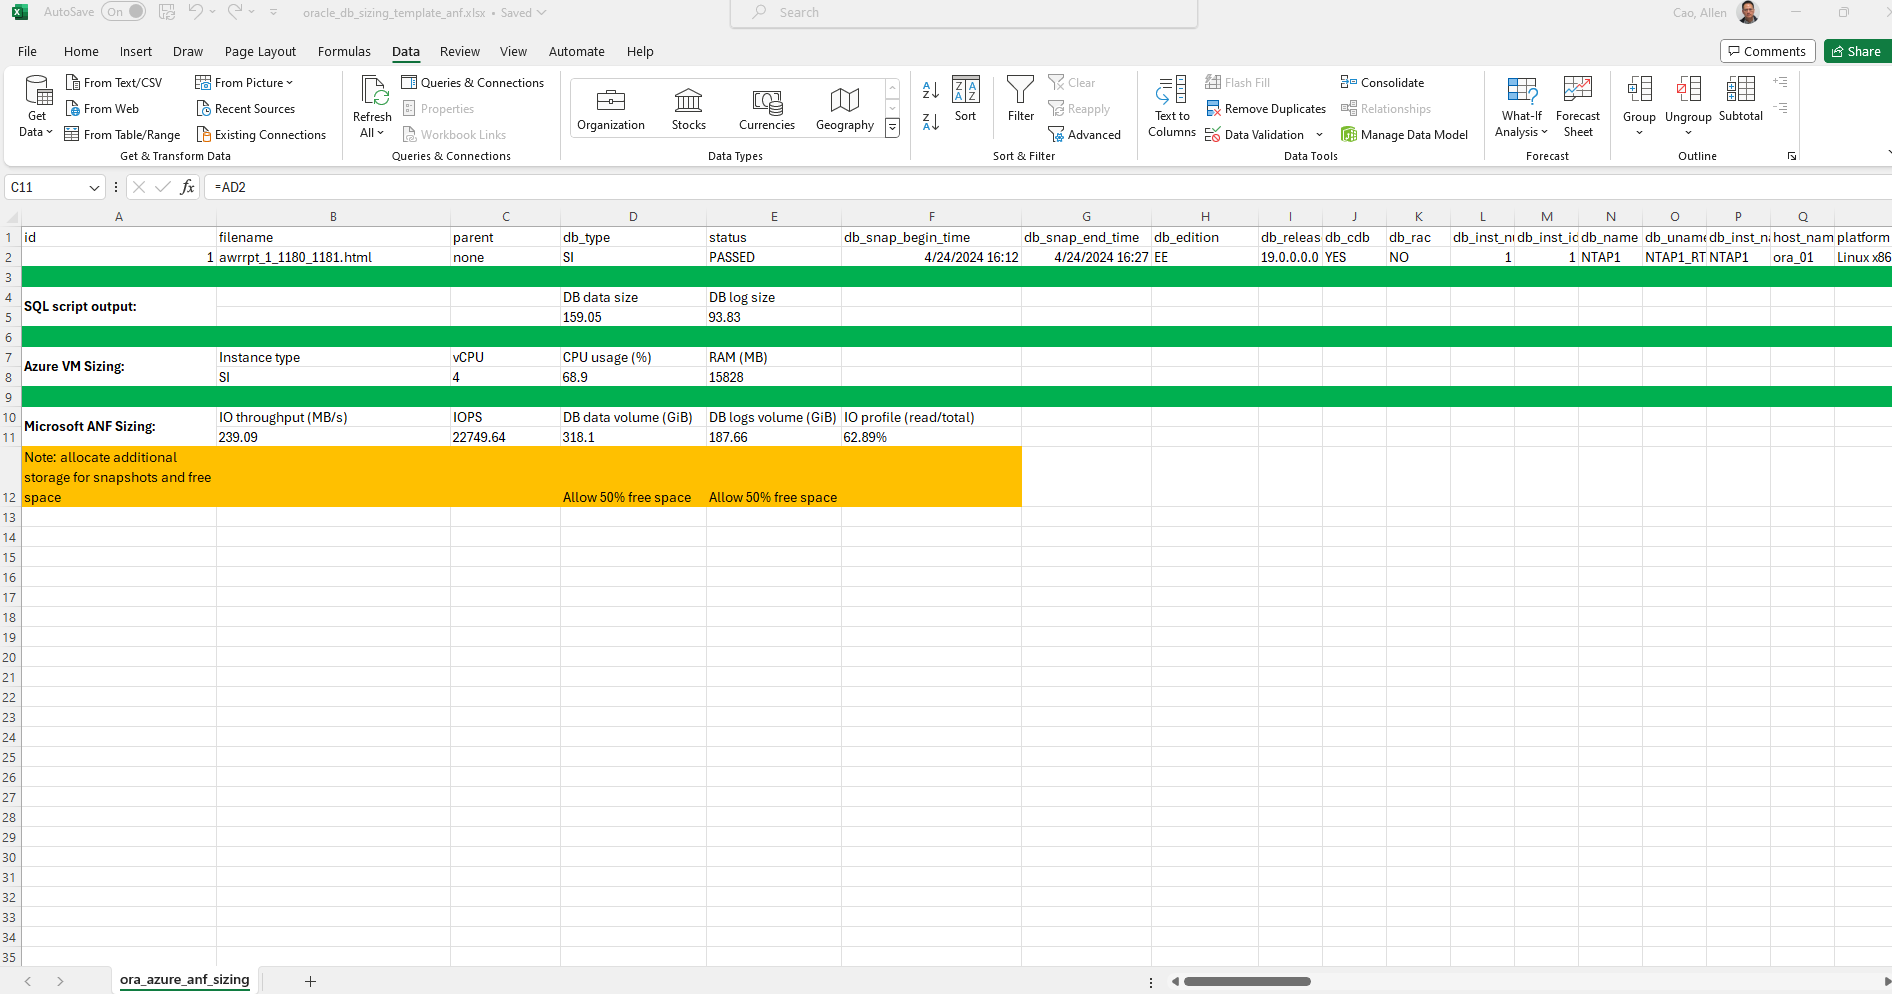 Cette image fournit une capture d'écran du modèle Excel pour le dimensionnement Oracle